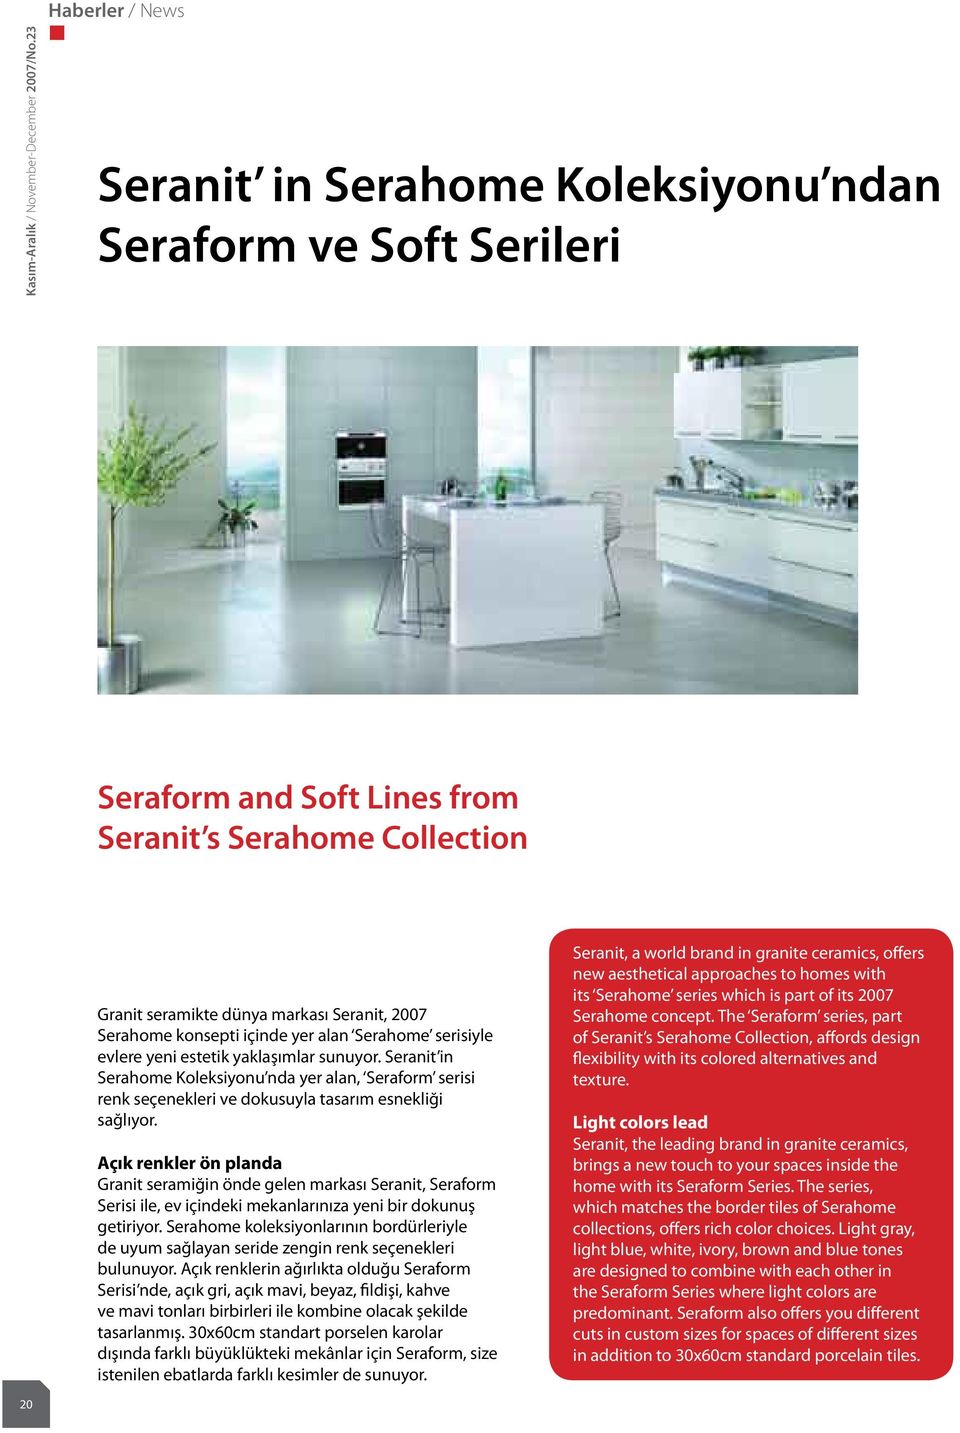 alan Serahome serisiyle evlere yeni estetik yaklaşımlar sunuyor. Seranit in Serahome Koleksiyonu nda yer alan, Seraform serisi renk seçenekleri ve dokusuyla tasarım esnekliği sağlıyor.